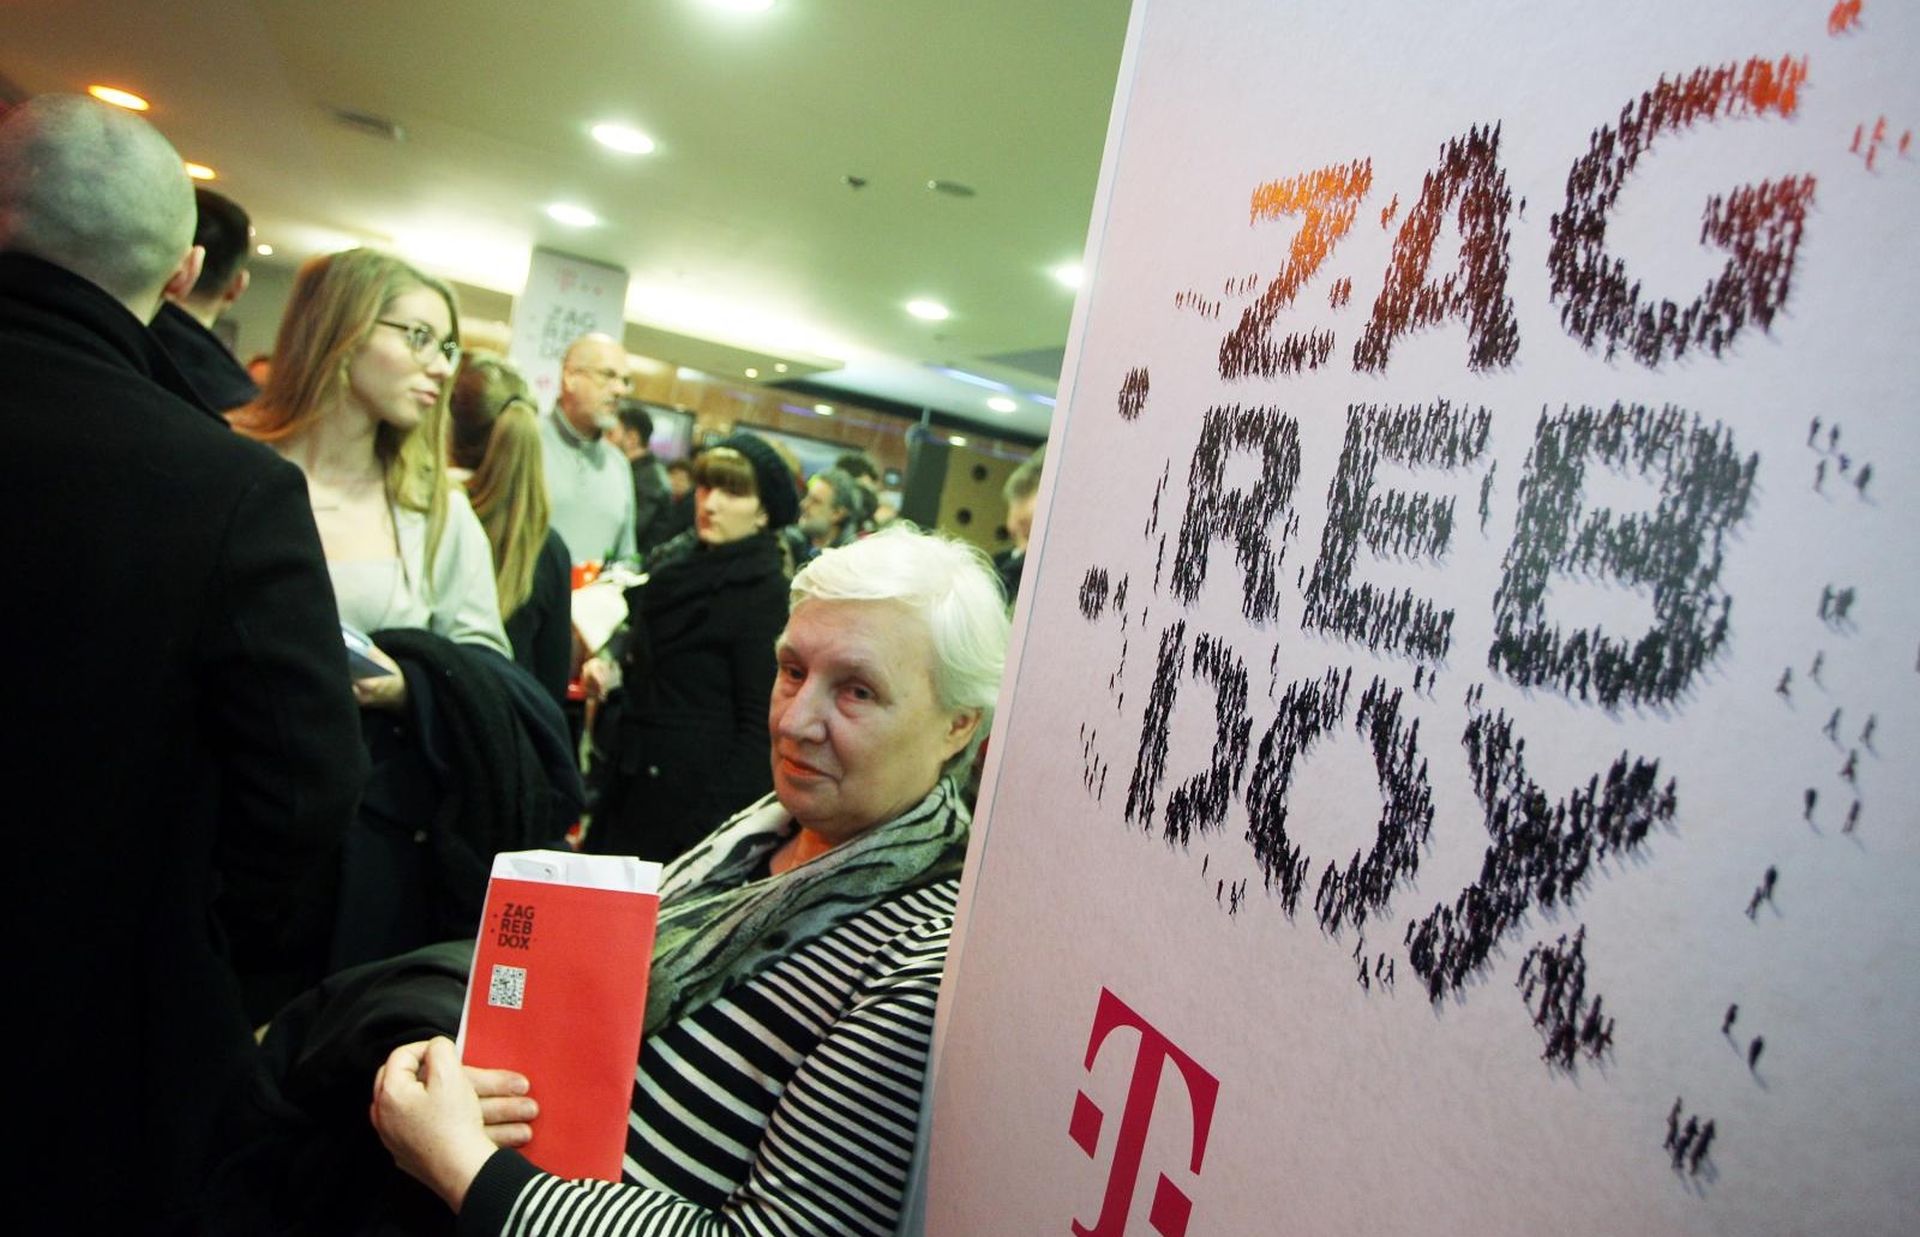 22.02.2015., Zagreb - U Cineplexx Centru Kaptol otvoreno je 11. izdanje Medjunarodnog festivala dokumentarnog filma ZagrebDox. Photo: Goran Jakus/PIXSELL